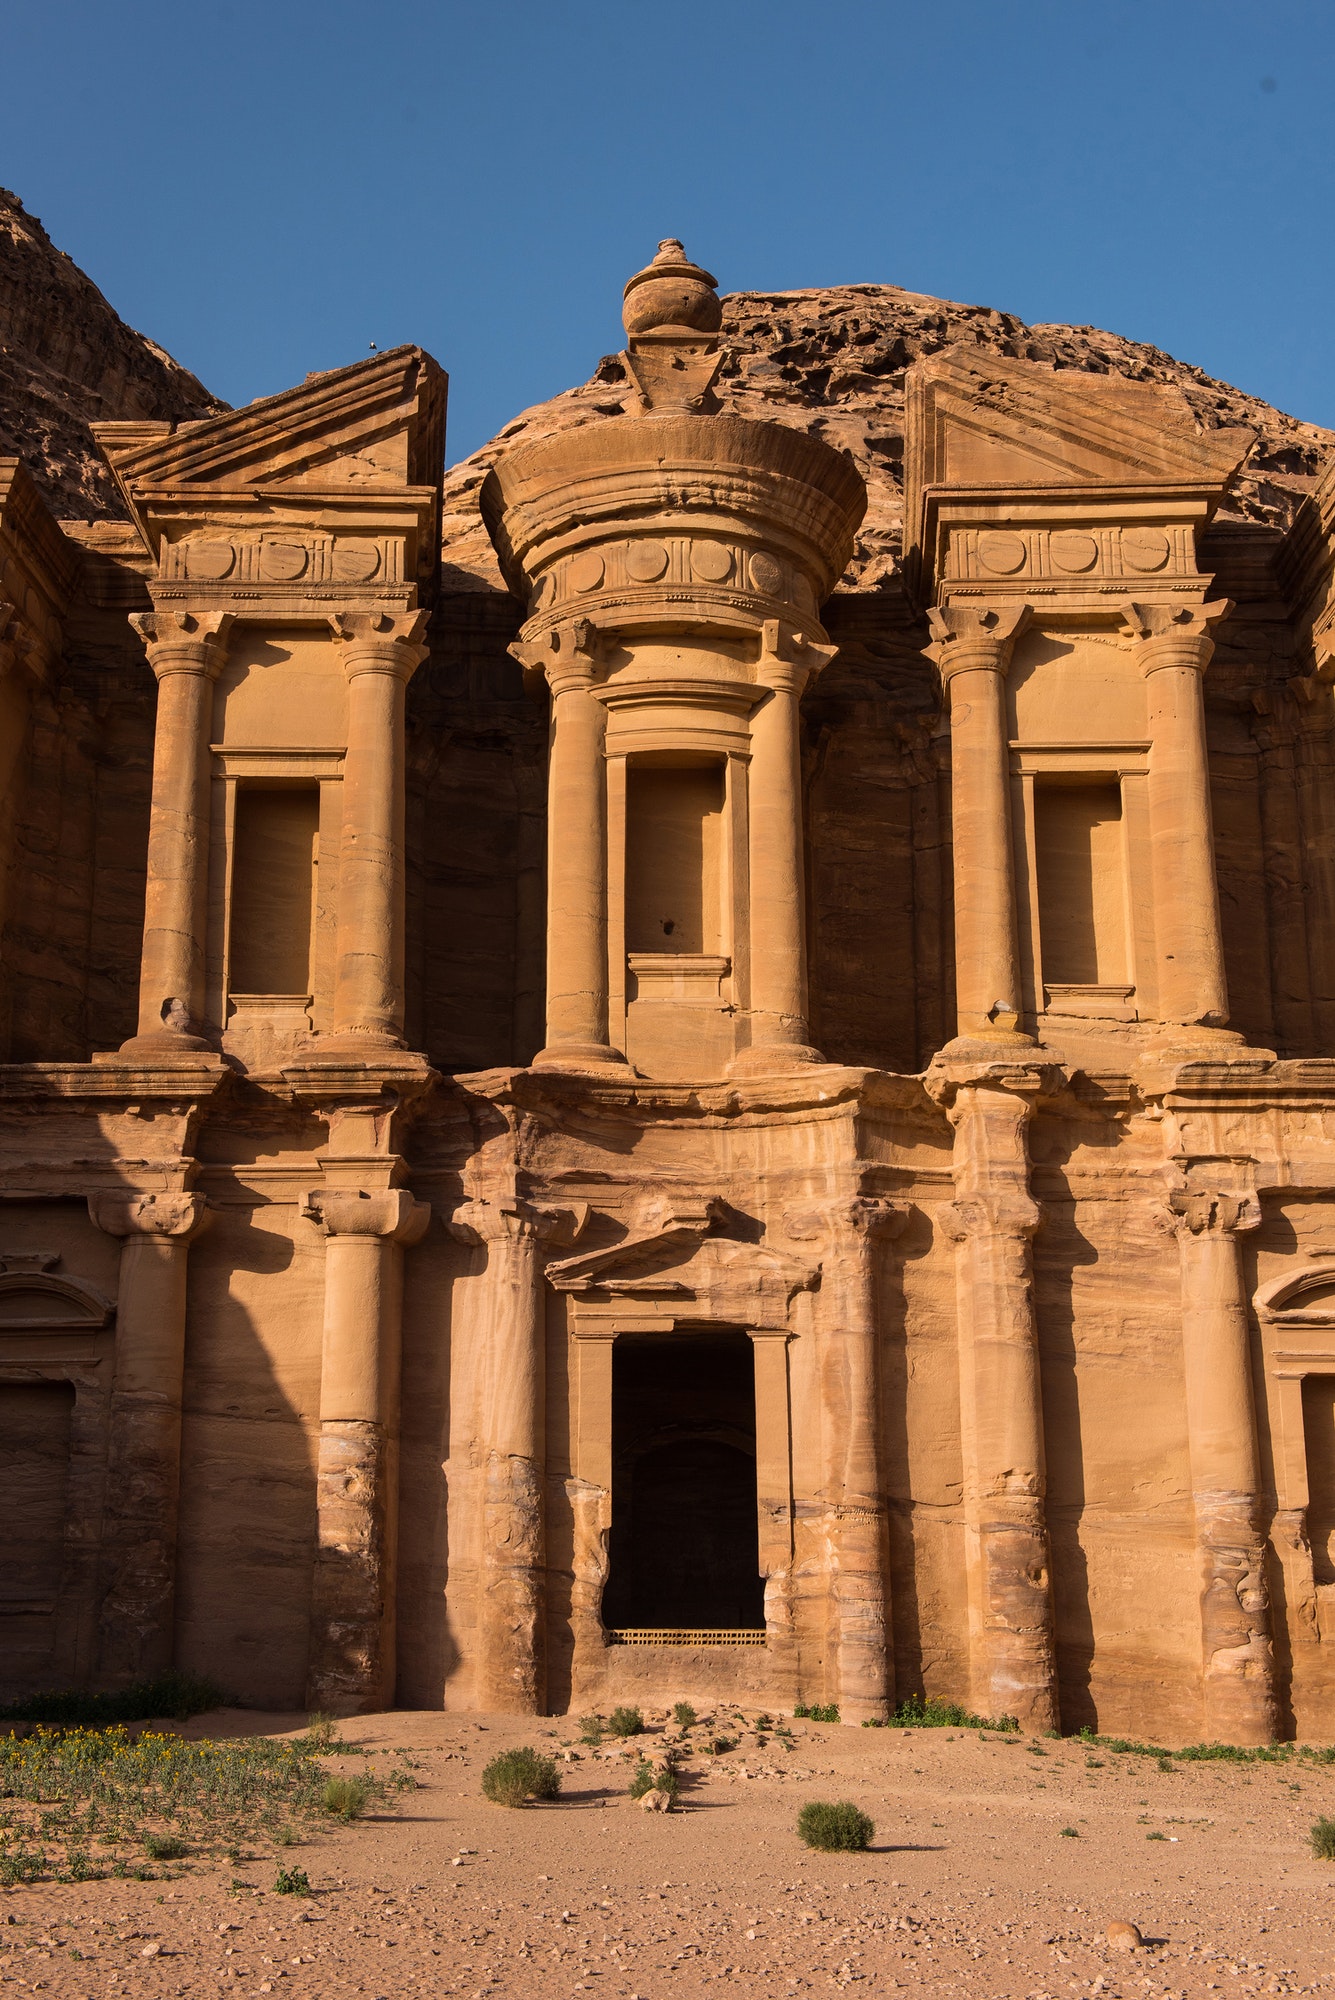 Petra merveille du monde : joyau antique des nabatéens au cœur du désert jordanien